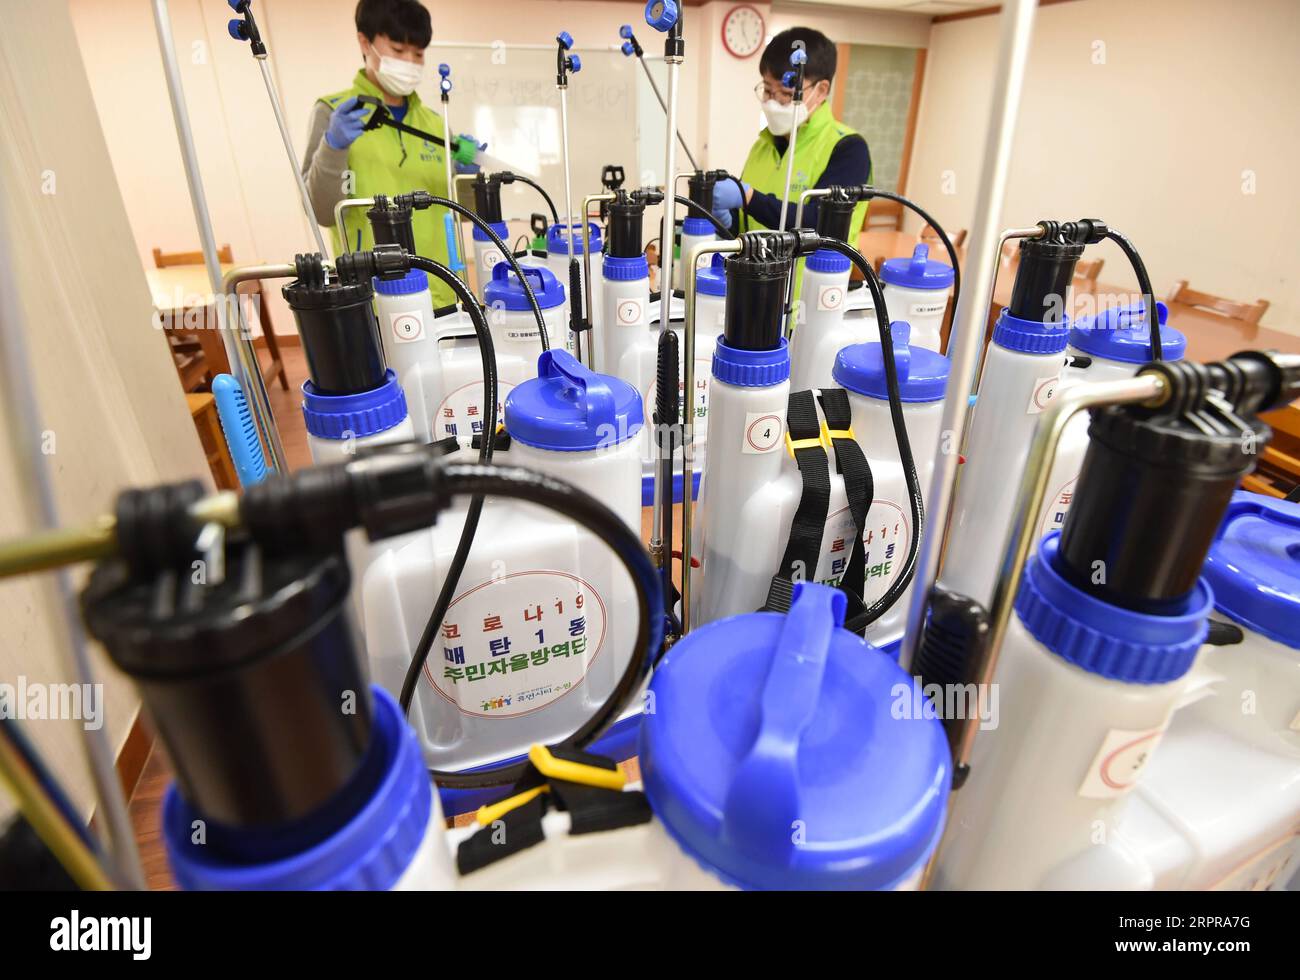 200330 -- SEOUL, 30 marzo 2020 Xinhua -- il personale controlla le attrezzature di disinfezione in leasing gratuito per i cittadini a Suwon, Corea del Sud, 30 marzo 2020. I cittadini possono noleggiare gratuitamente attrezzature per la disinfezione secondo la politica locale. La Corea del Sud ha riportato 78 casi in più di COVID-19 rispetto a 24 ore fa a mezzanotte lunedì ora locale, portando il numero totale di infezioni a 9.661. NEWSIS/Handout via Xinhua COREA DEL SUD-COVID-19 PUBLICATIONxNOTxINxCHN Foto Stock